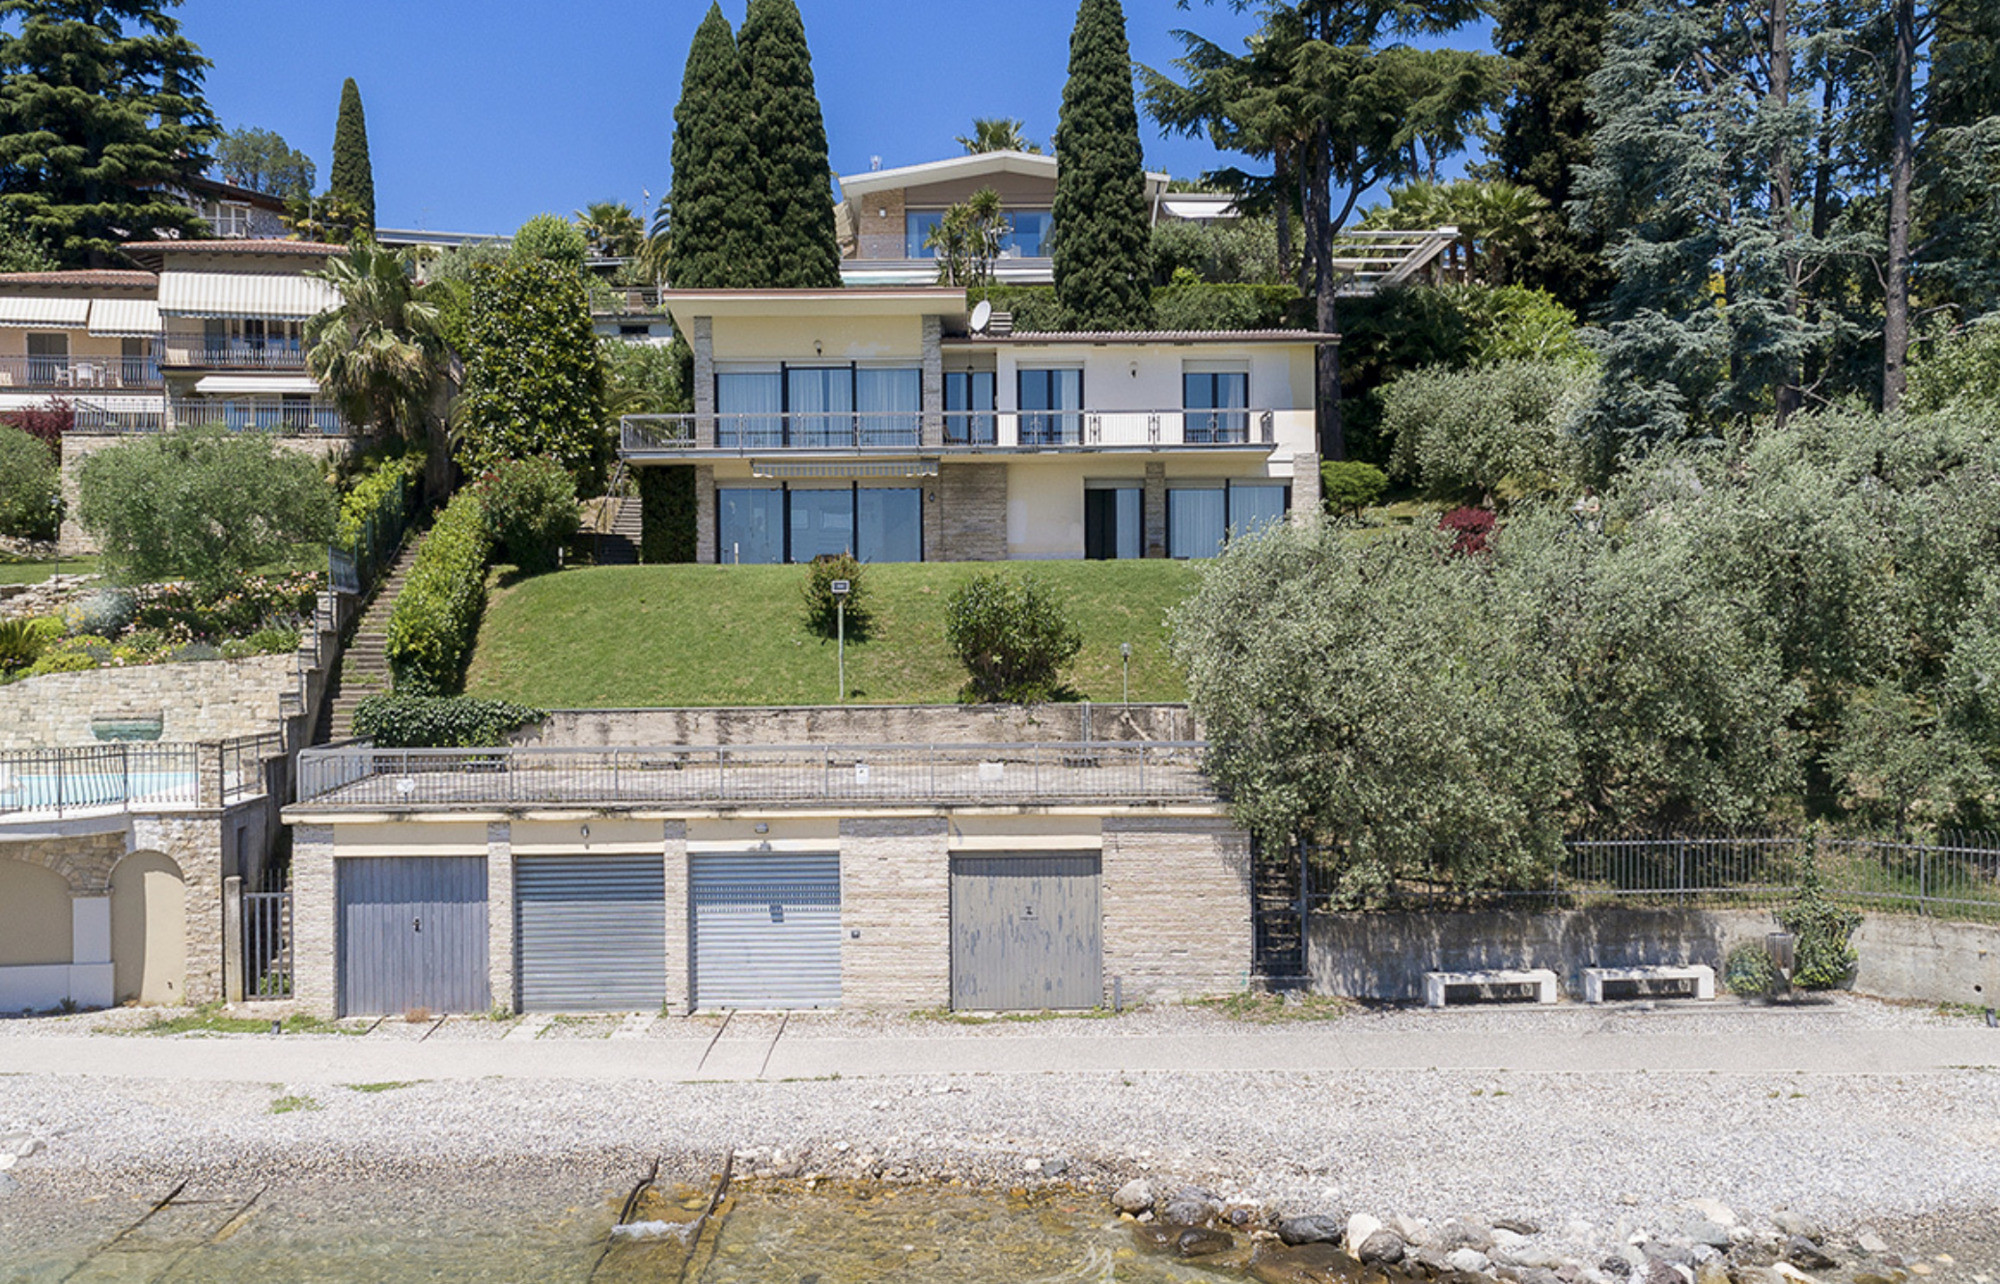 Villa fronte lago con darsena privata